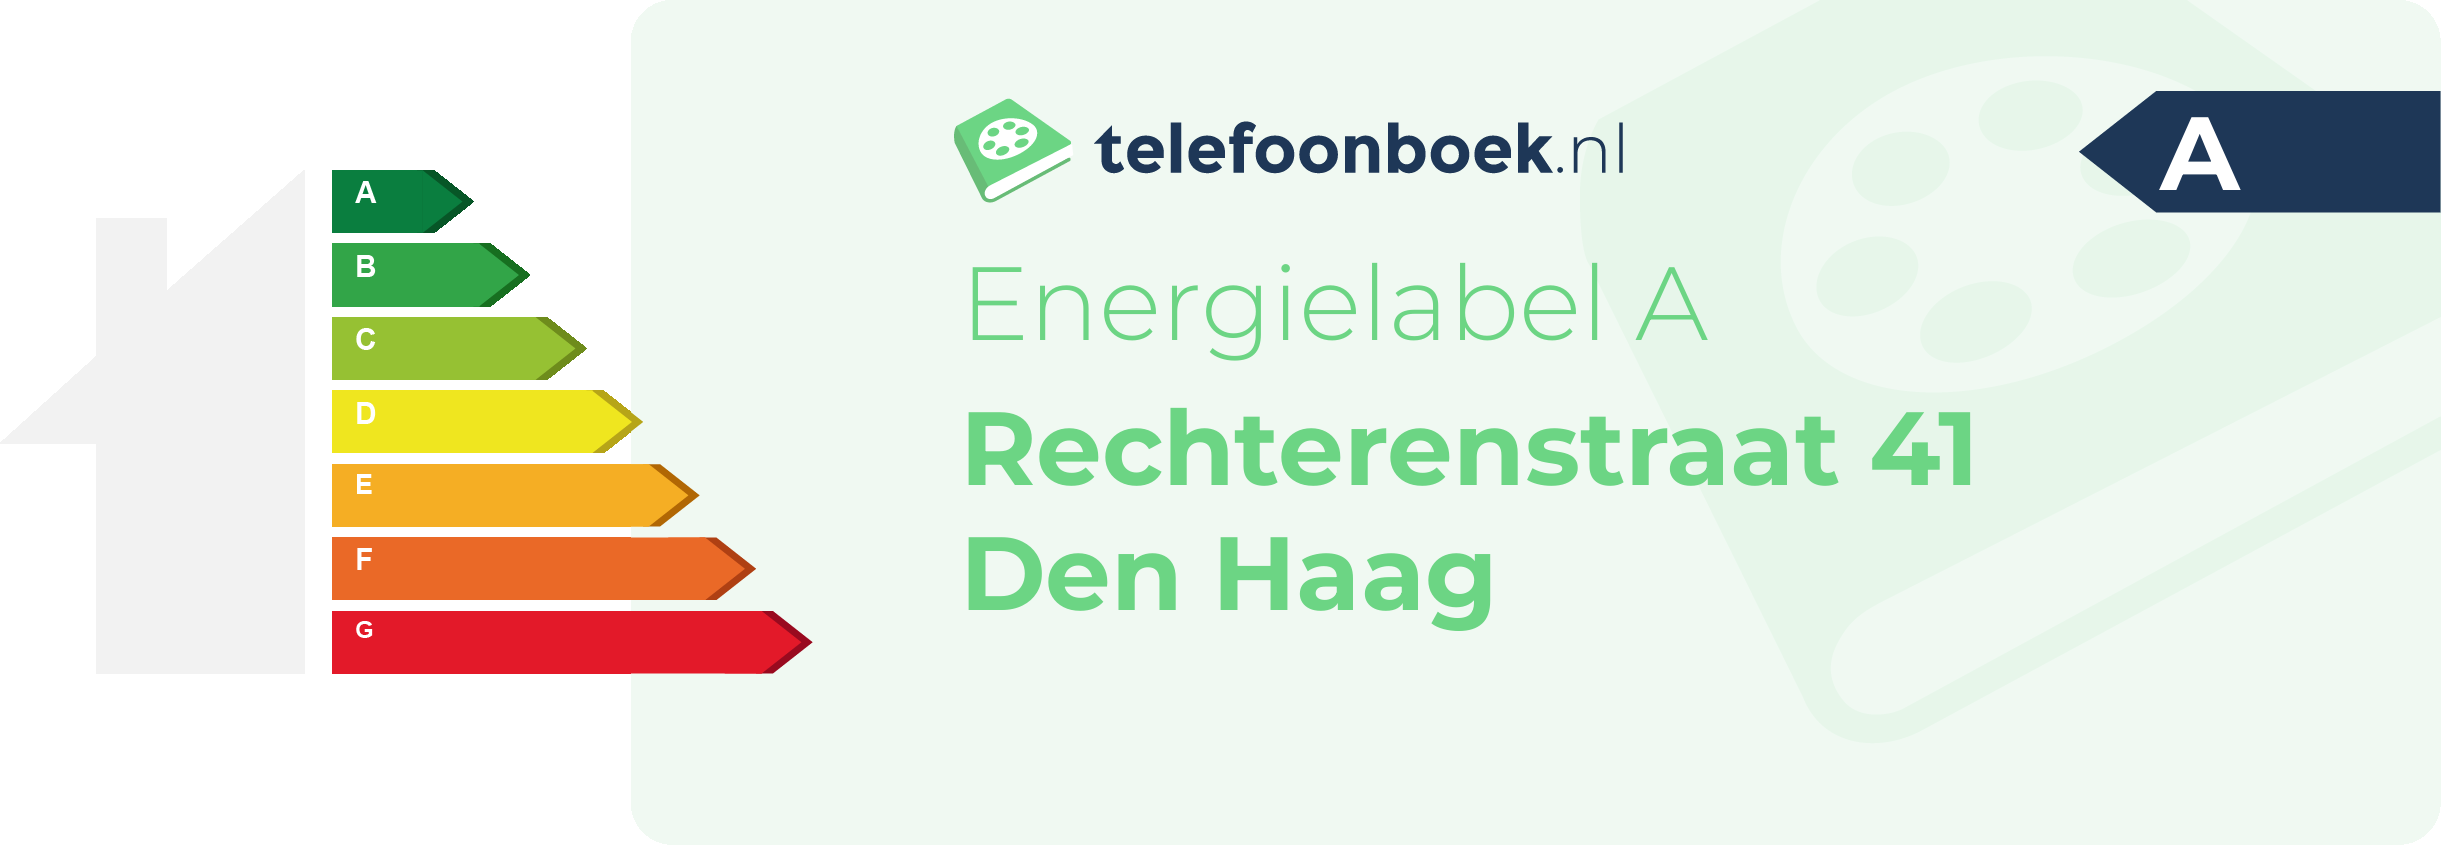 Energielabel Rechterenstraat 41 Den Haag